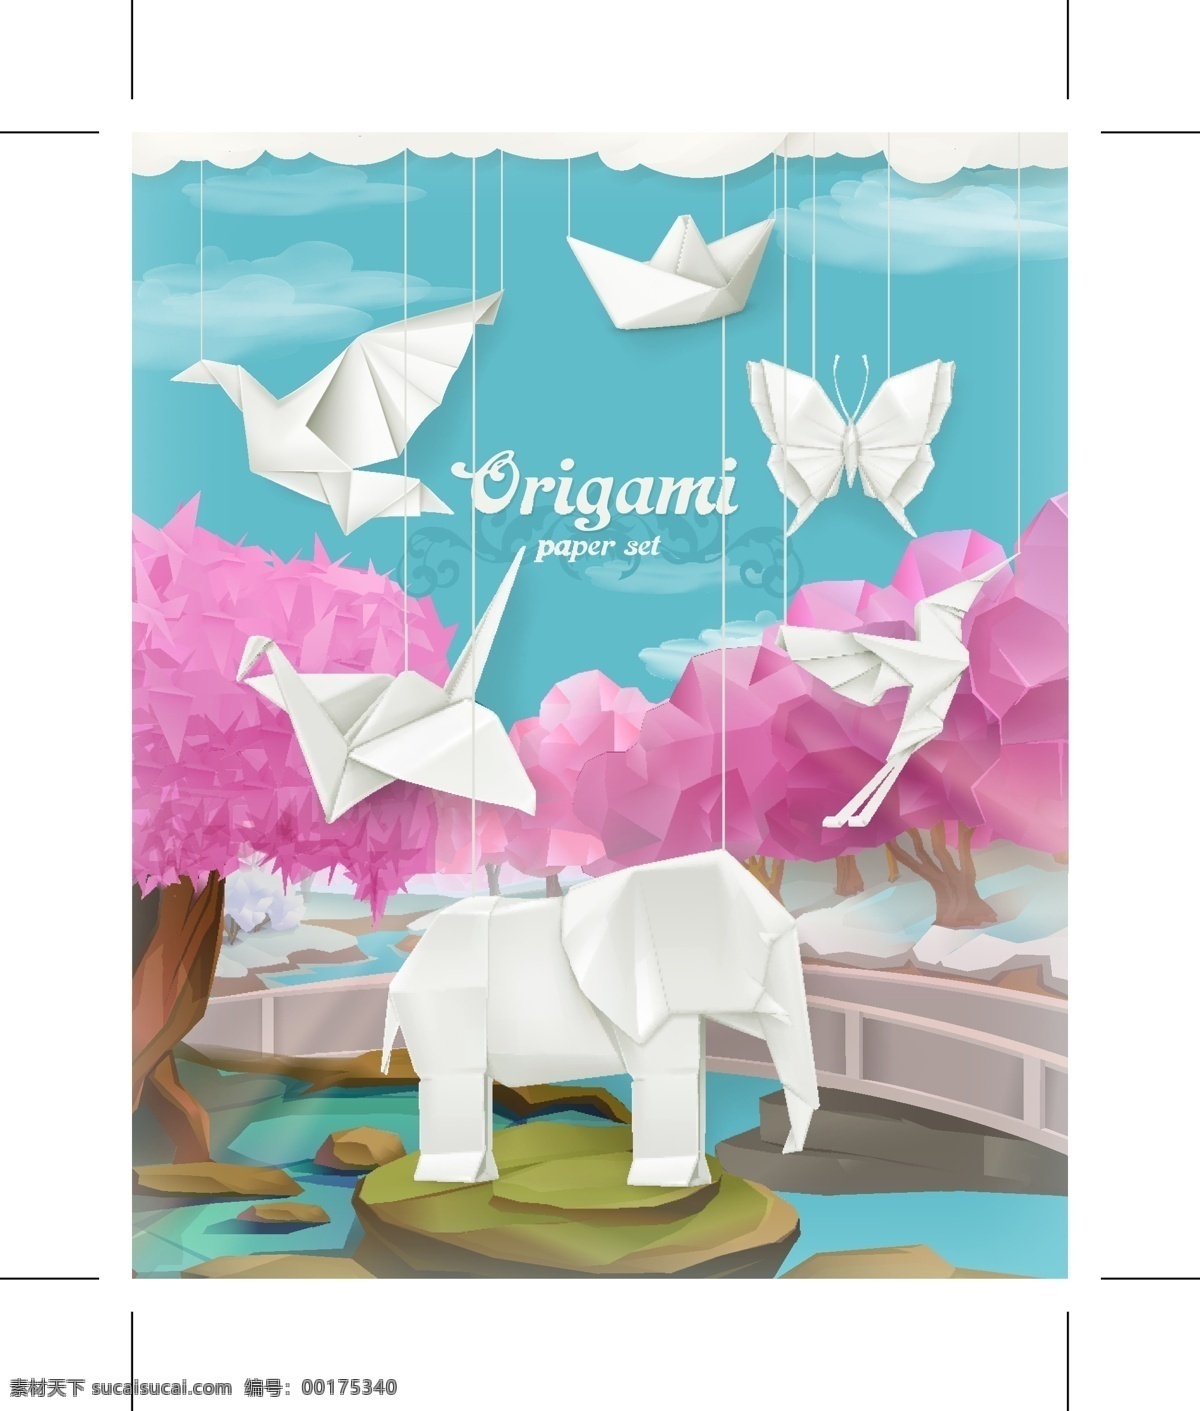 创意 折纸 动物 插画 矢量 纸鹤 纸船 鸟 大象 桥 树木 河 云朵